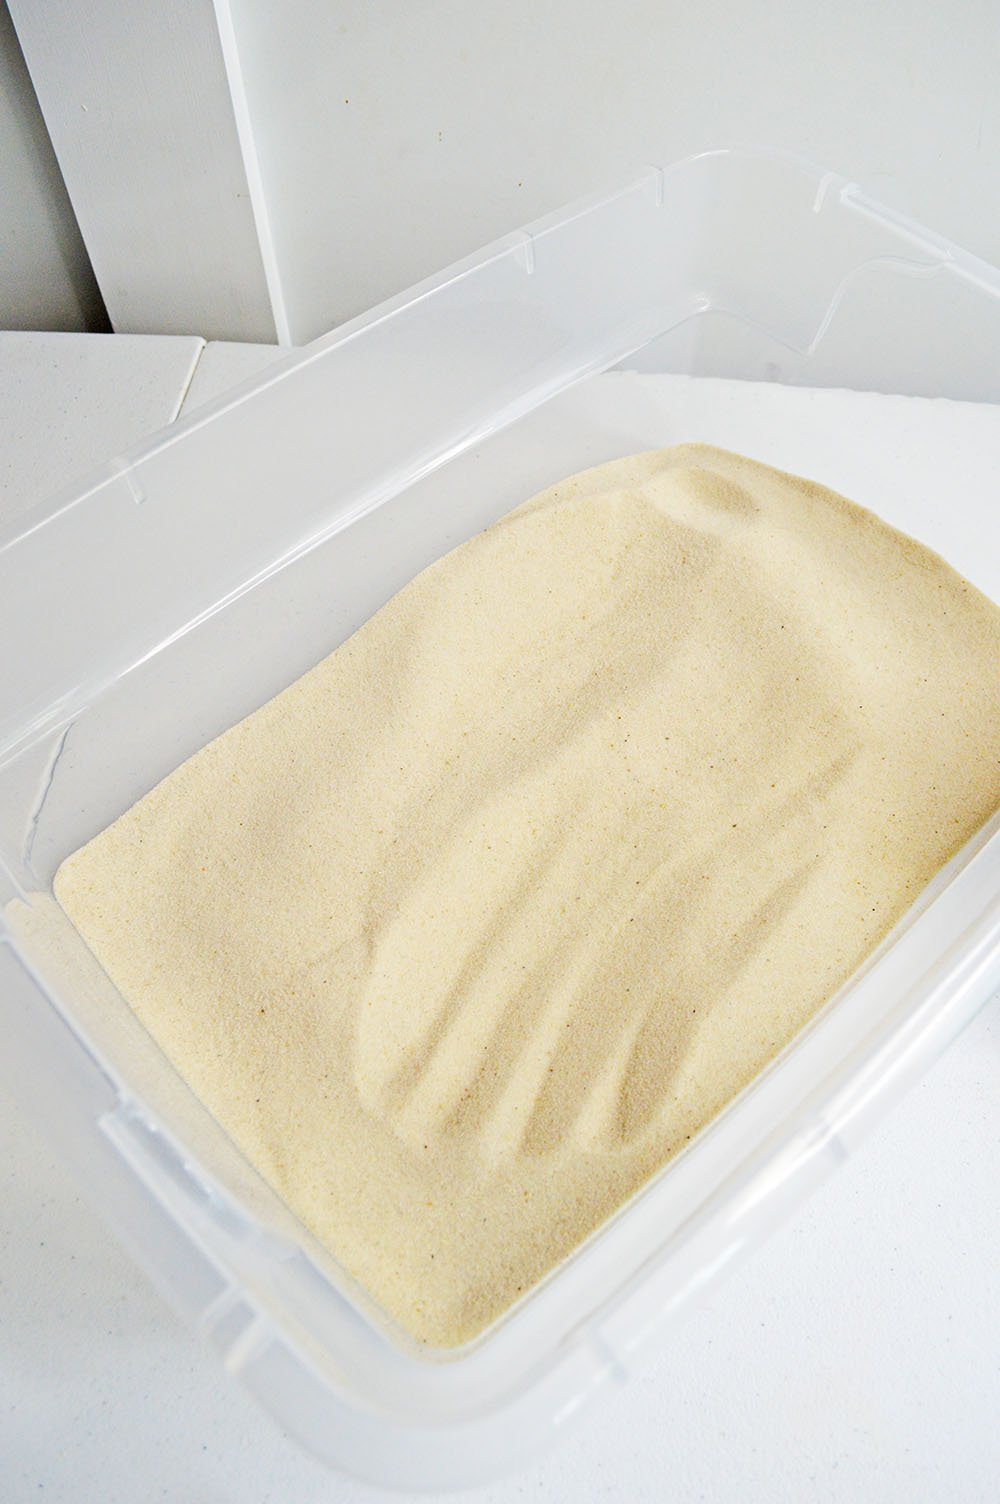 sand in sensory bin